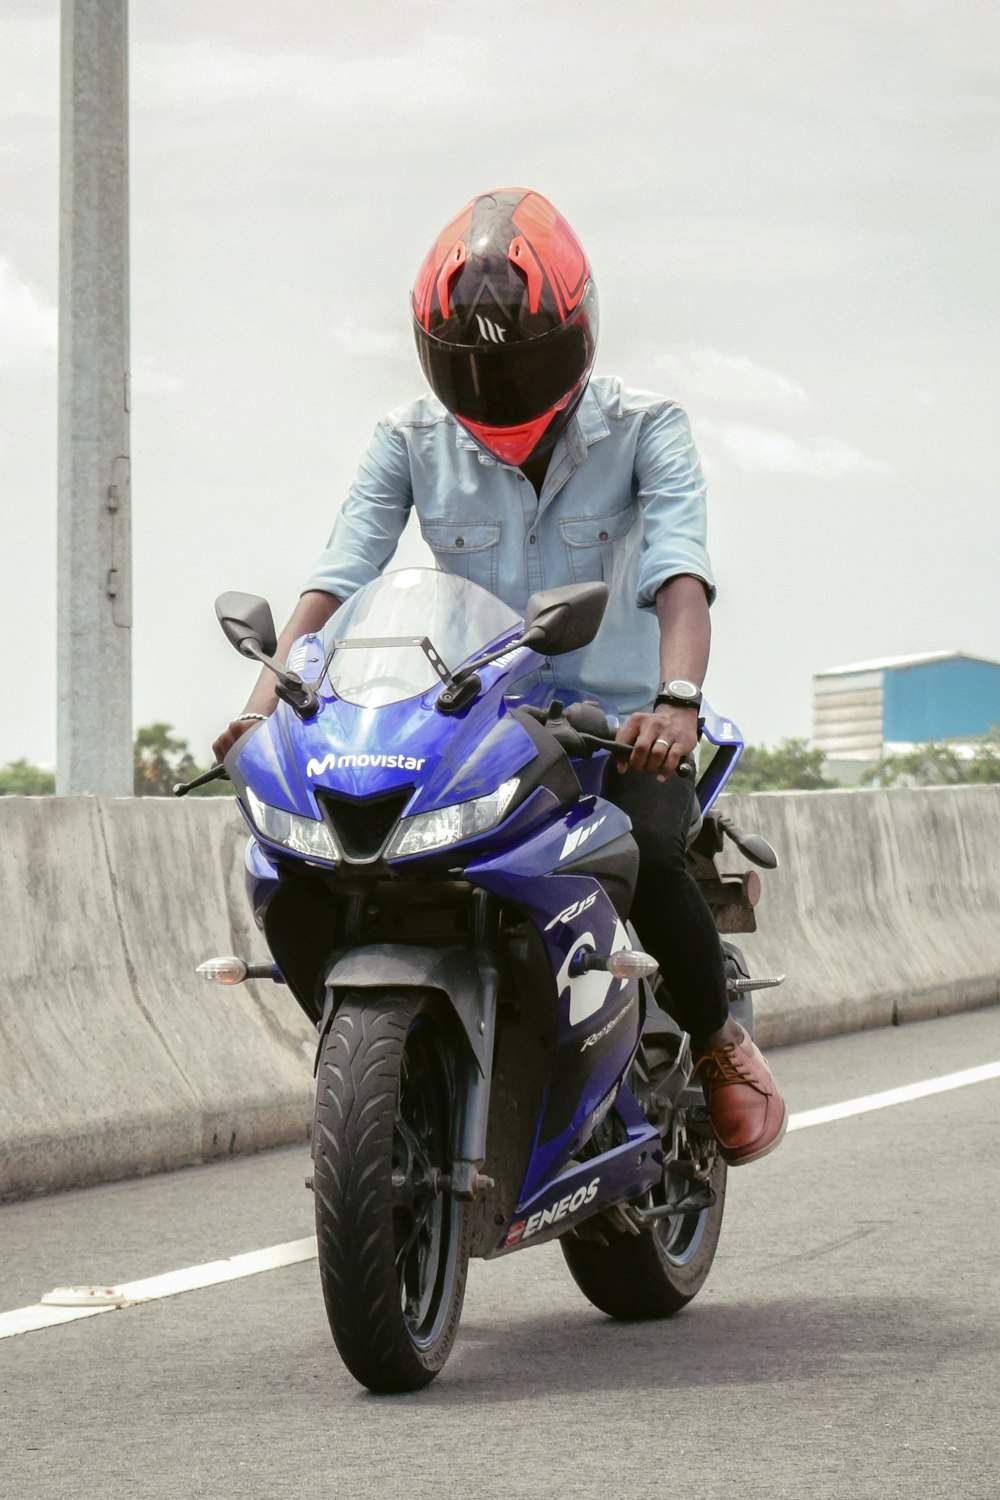 Mann mit rotem Helm fährt tagsüber blau-schwarzes Motorrad